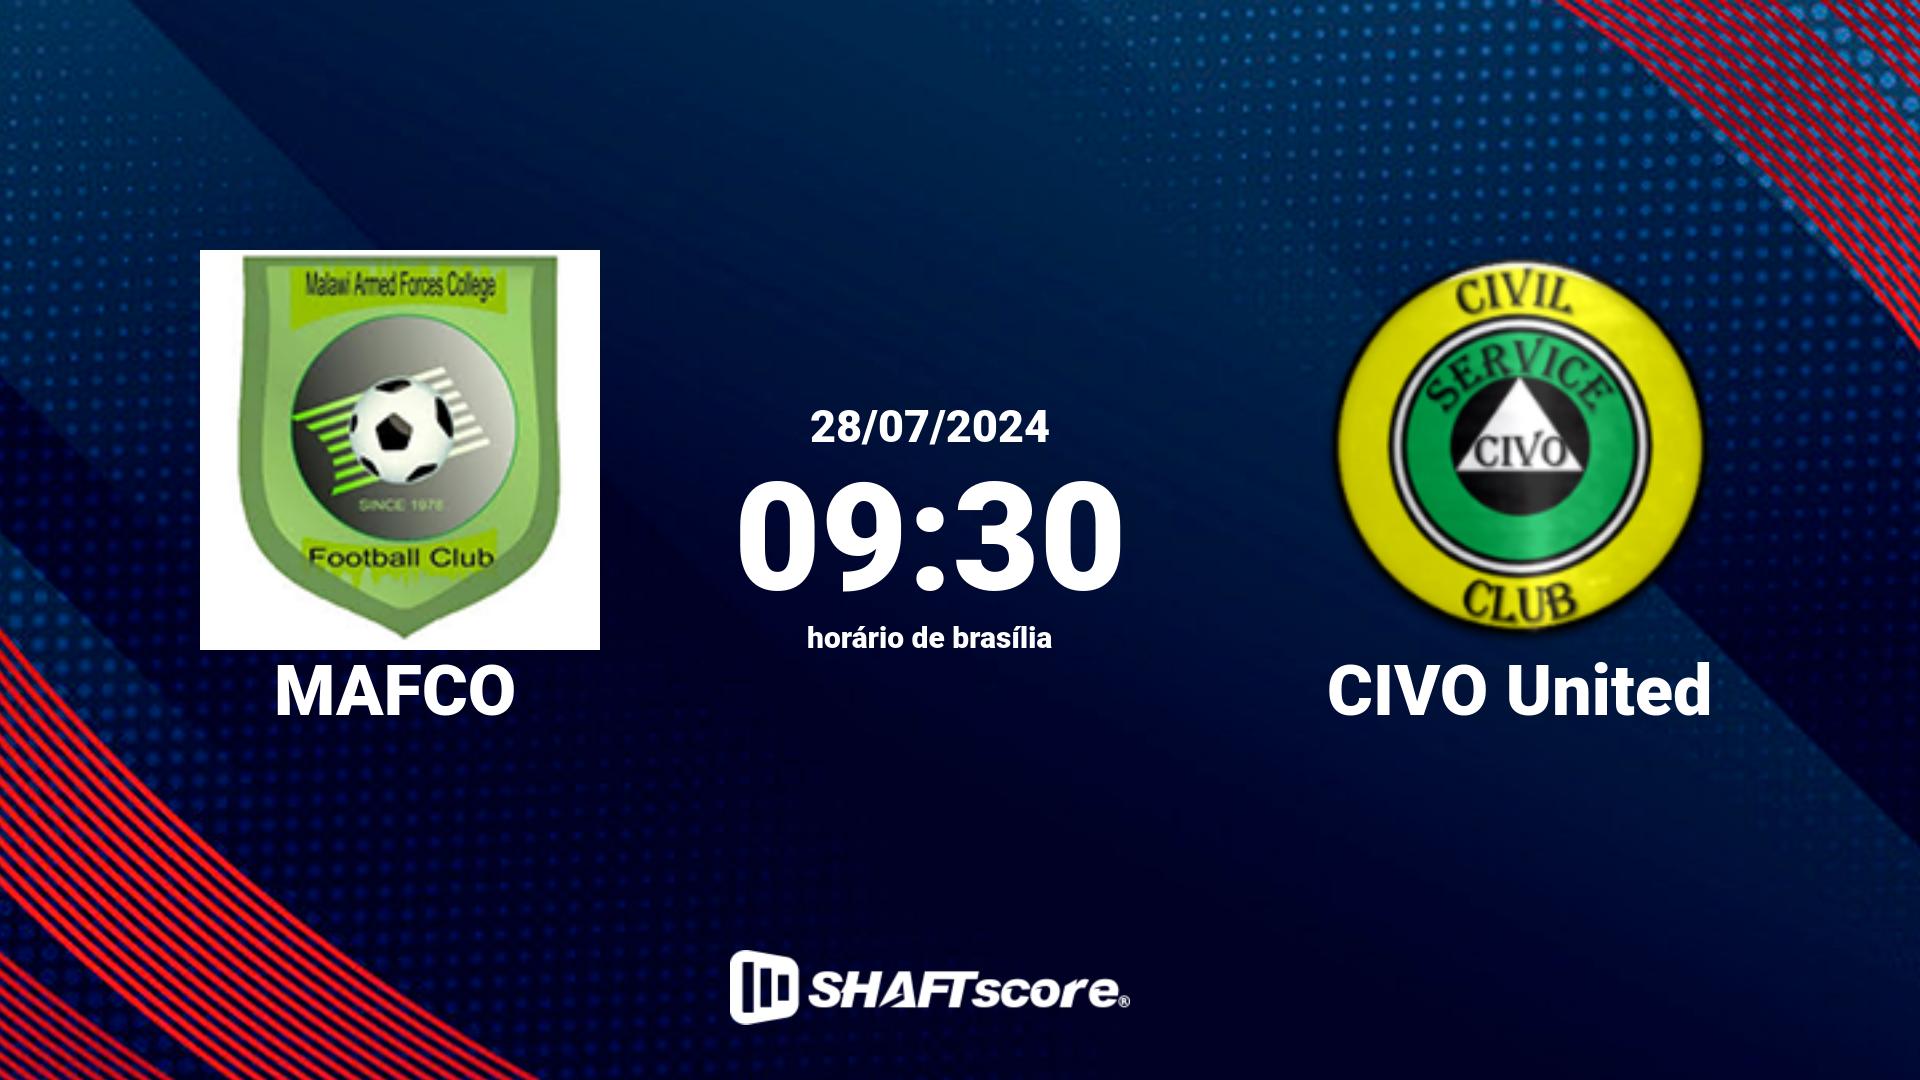 Estatísticas do jogo MAFCO vs CIVO United 28.07 09:30